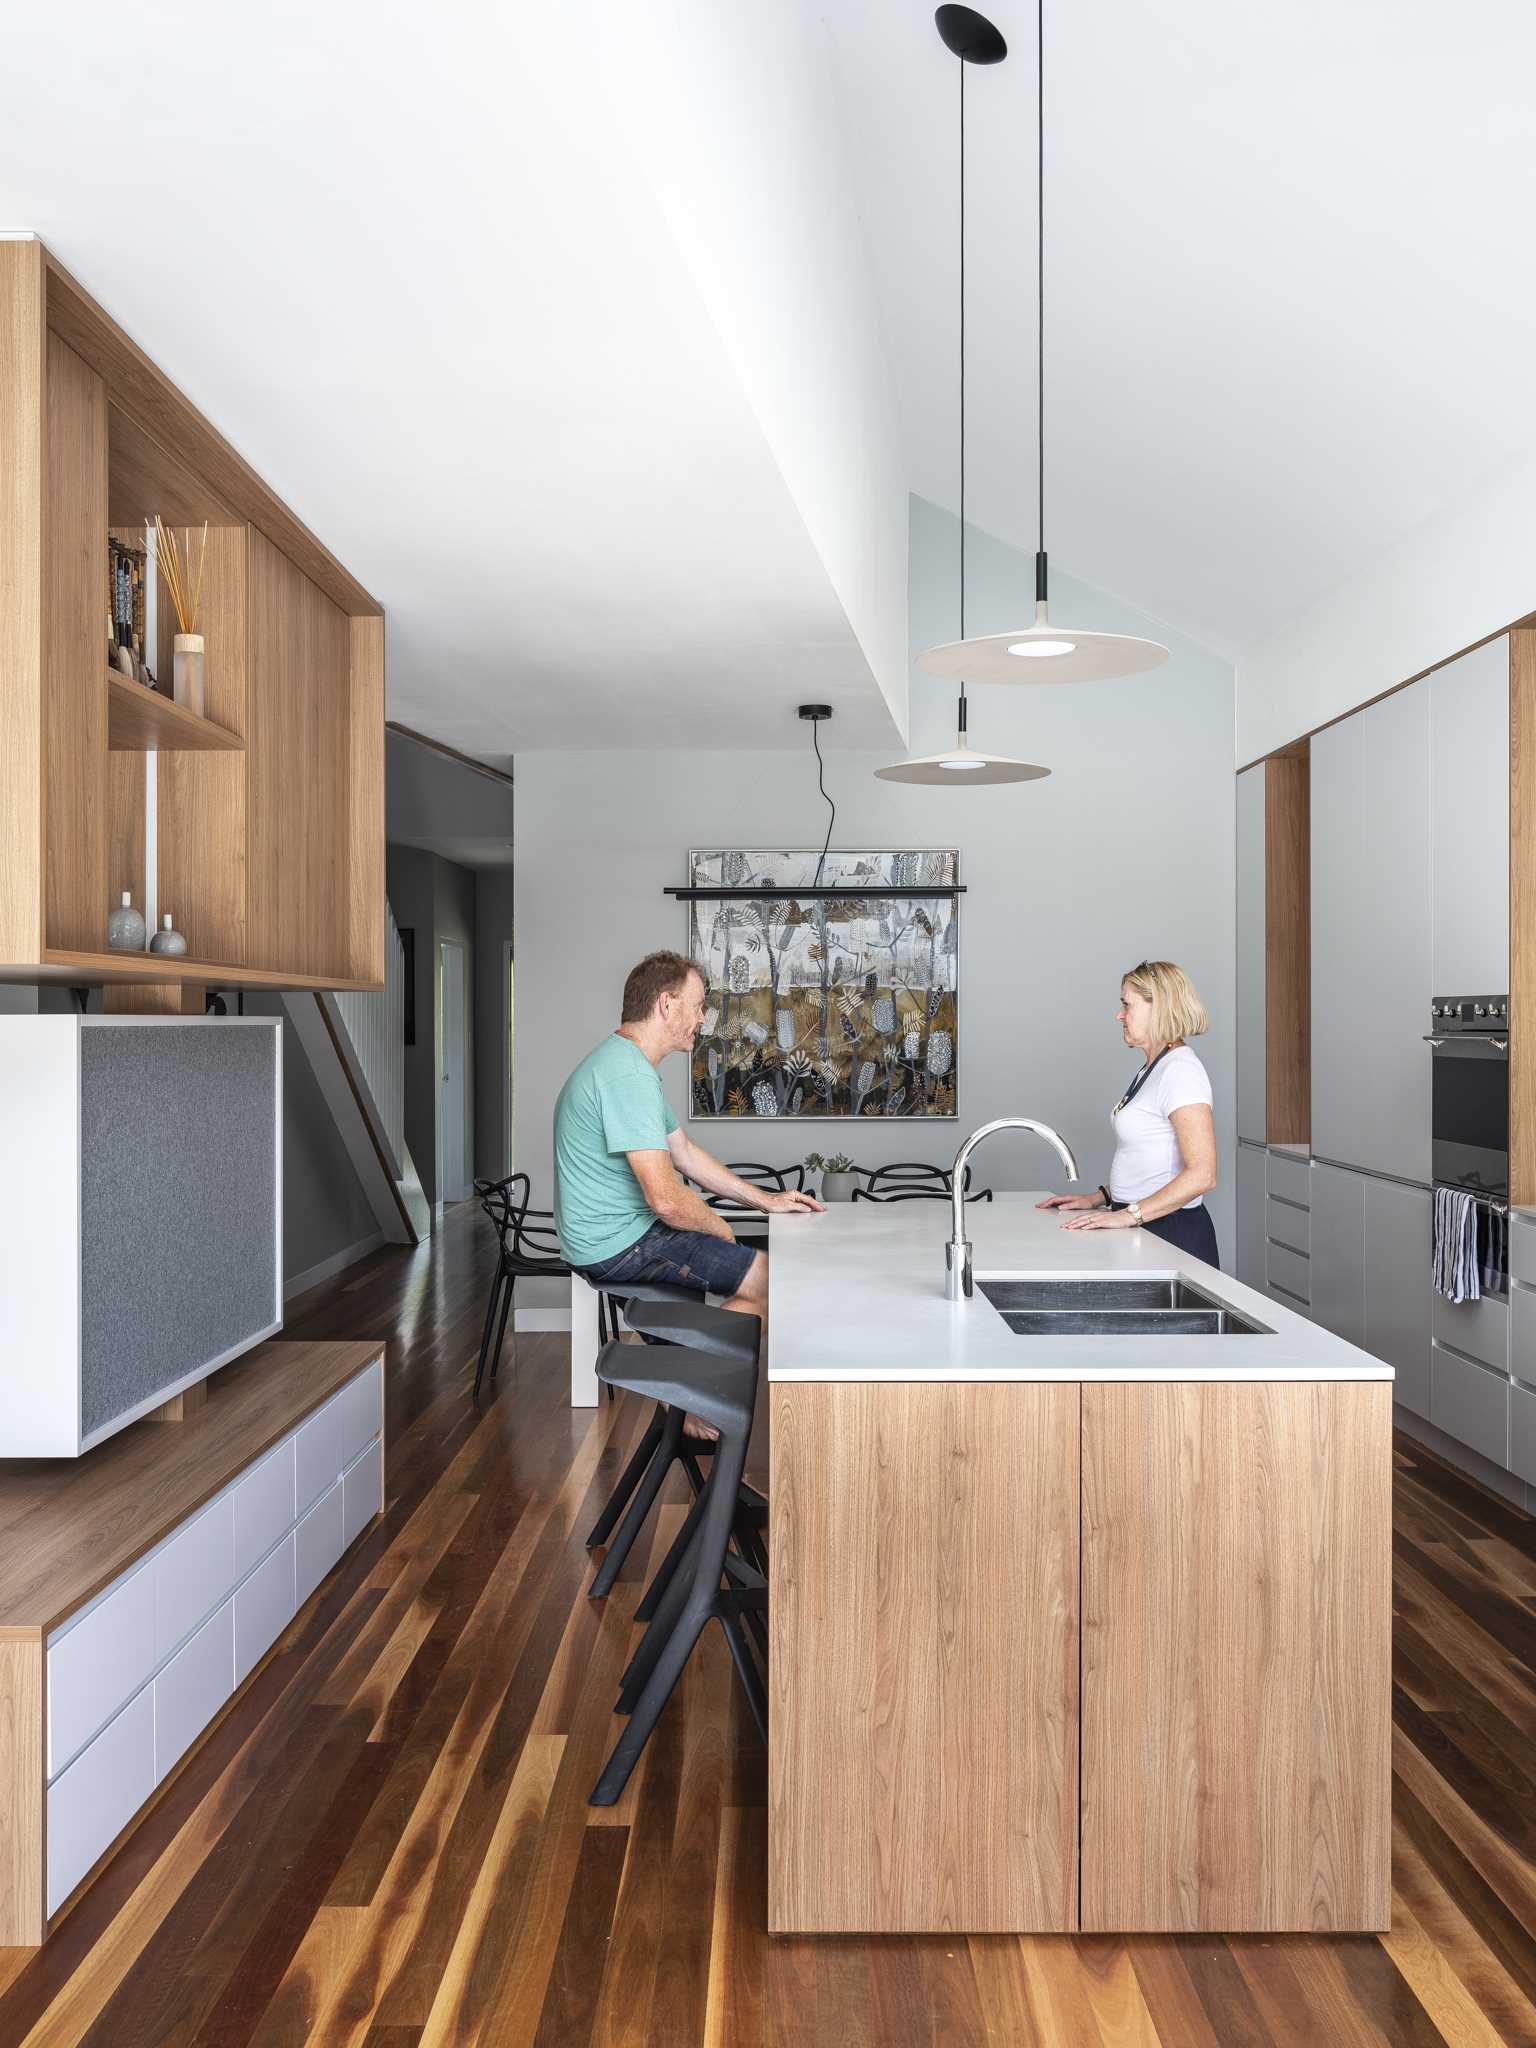 در این آشپزخانه مدرن، کابینت های چوبی و سفید مکمل کف چوبی هستند و ،اصر بتنی بیرون را نرم می کنند.